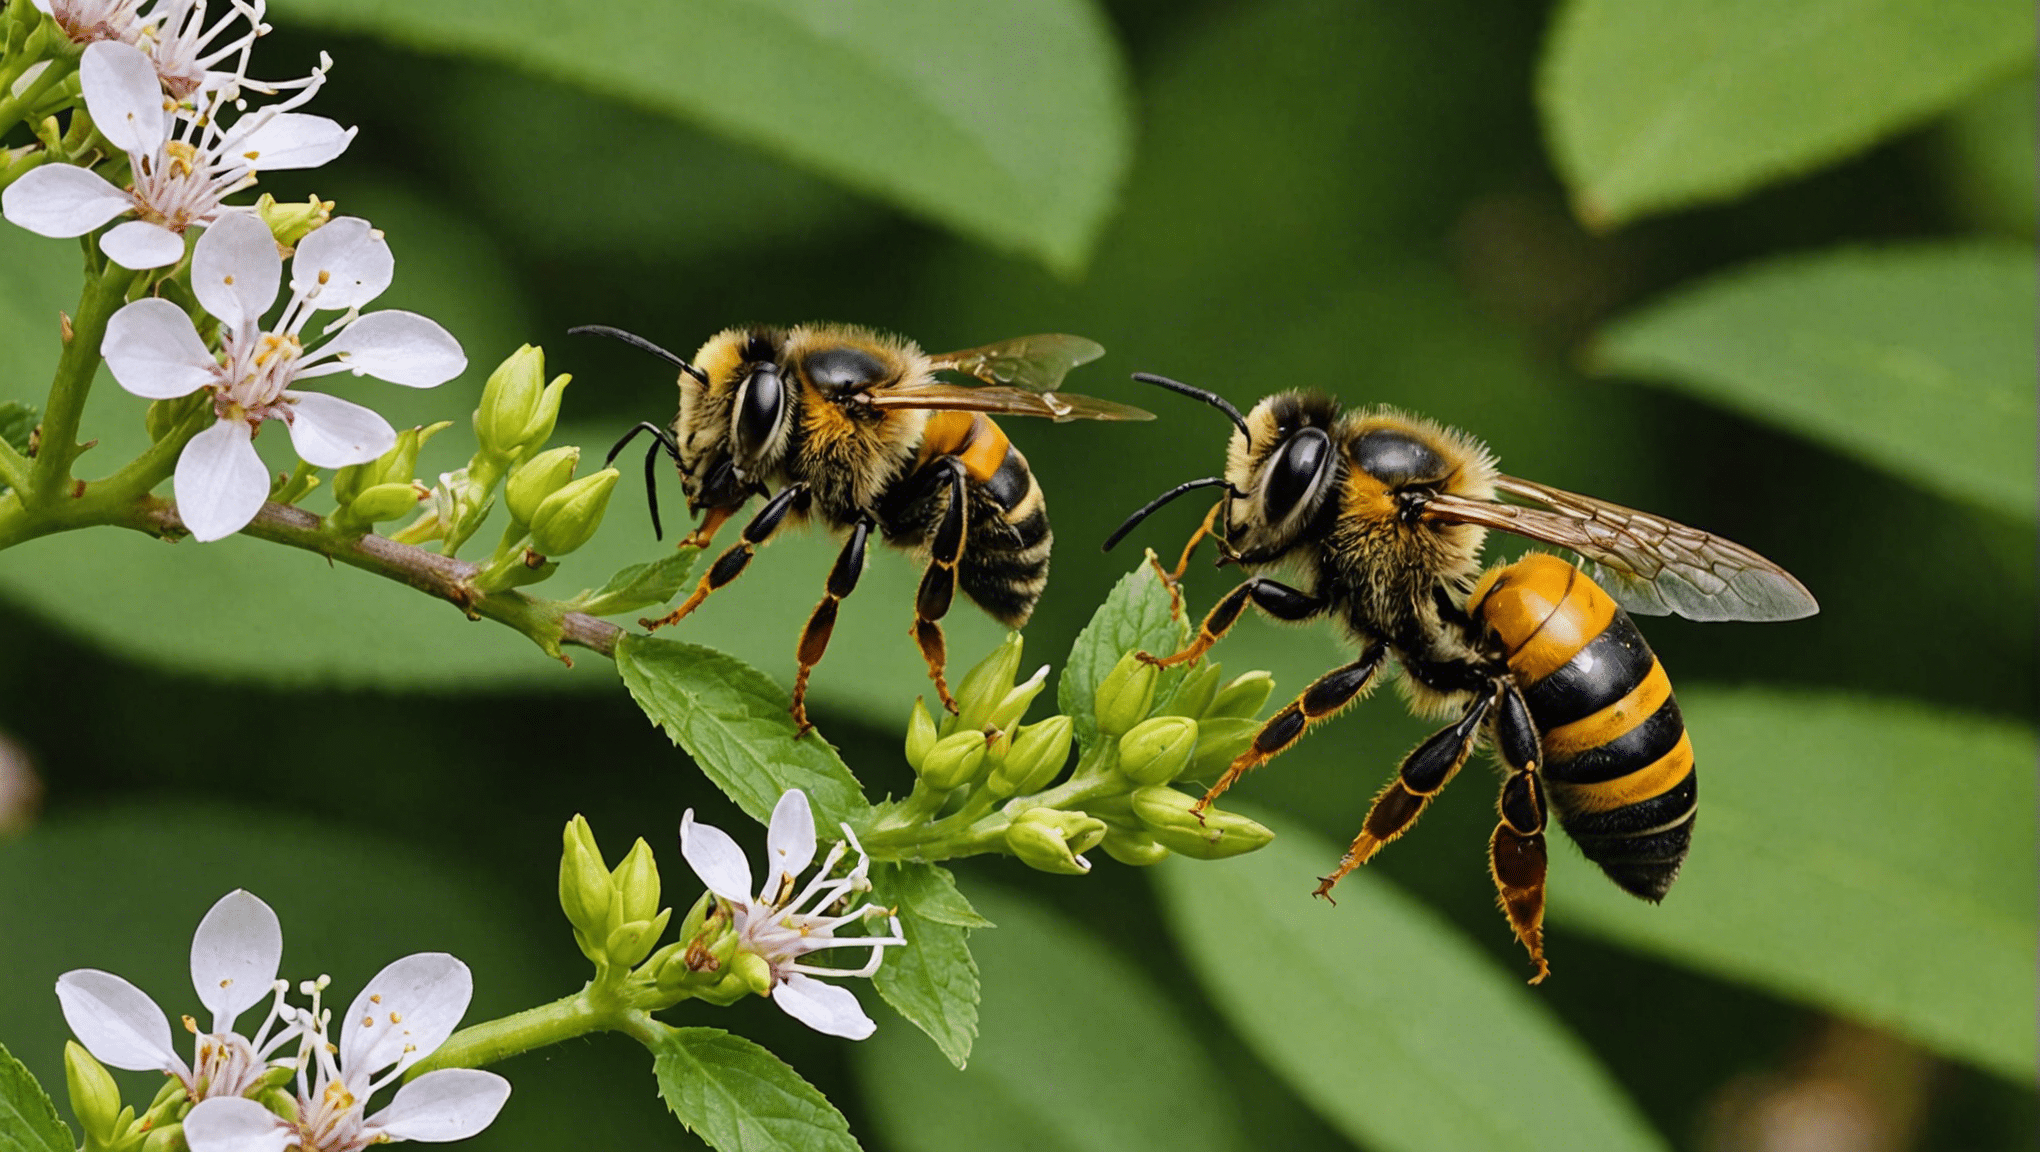 Opdag forskellene mellem bier, hvepse og gedehamse og lær om deres udseende, adfærd og levesteder.